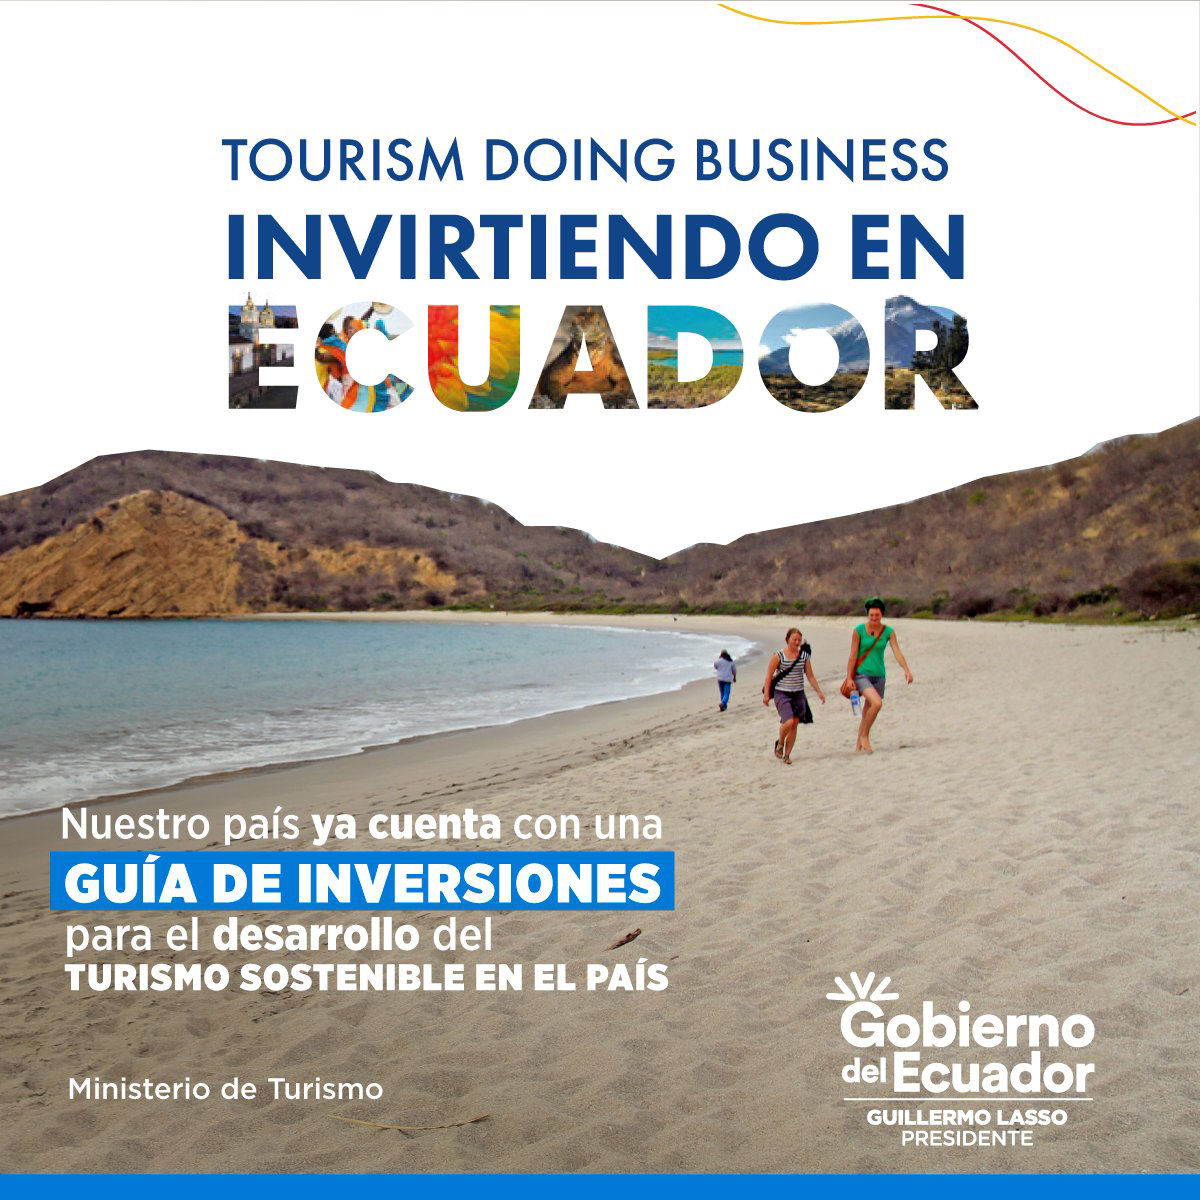 Somos un destino ideal para las inversiones turísticas sostenibles.